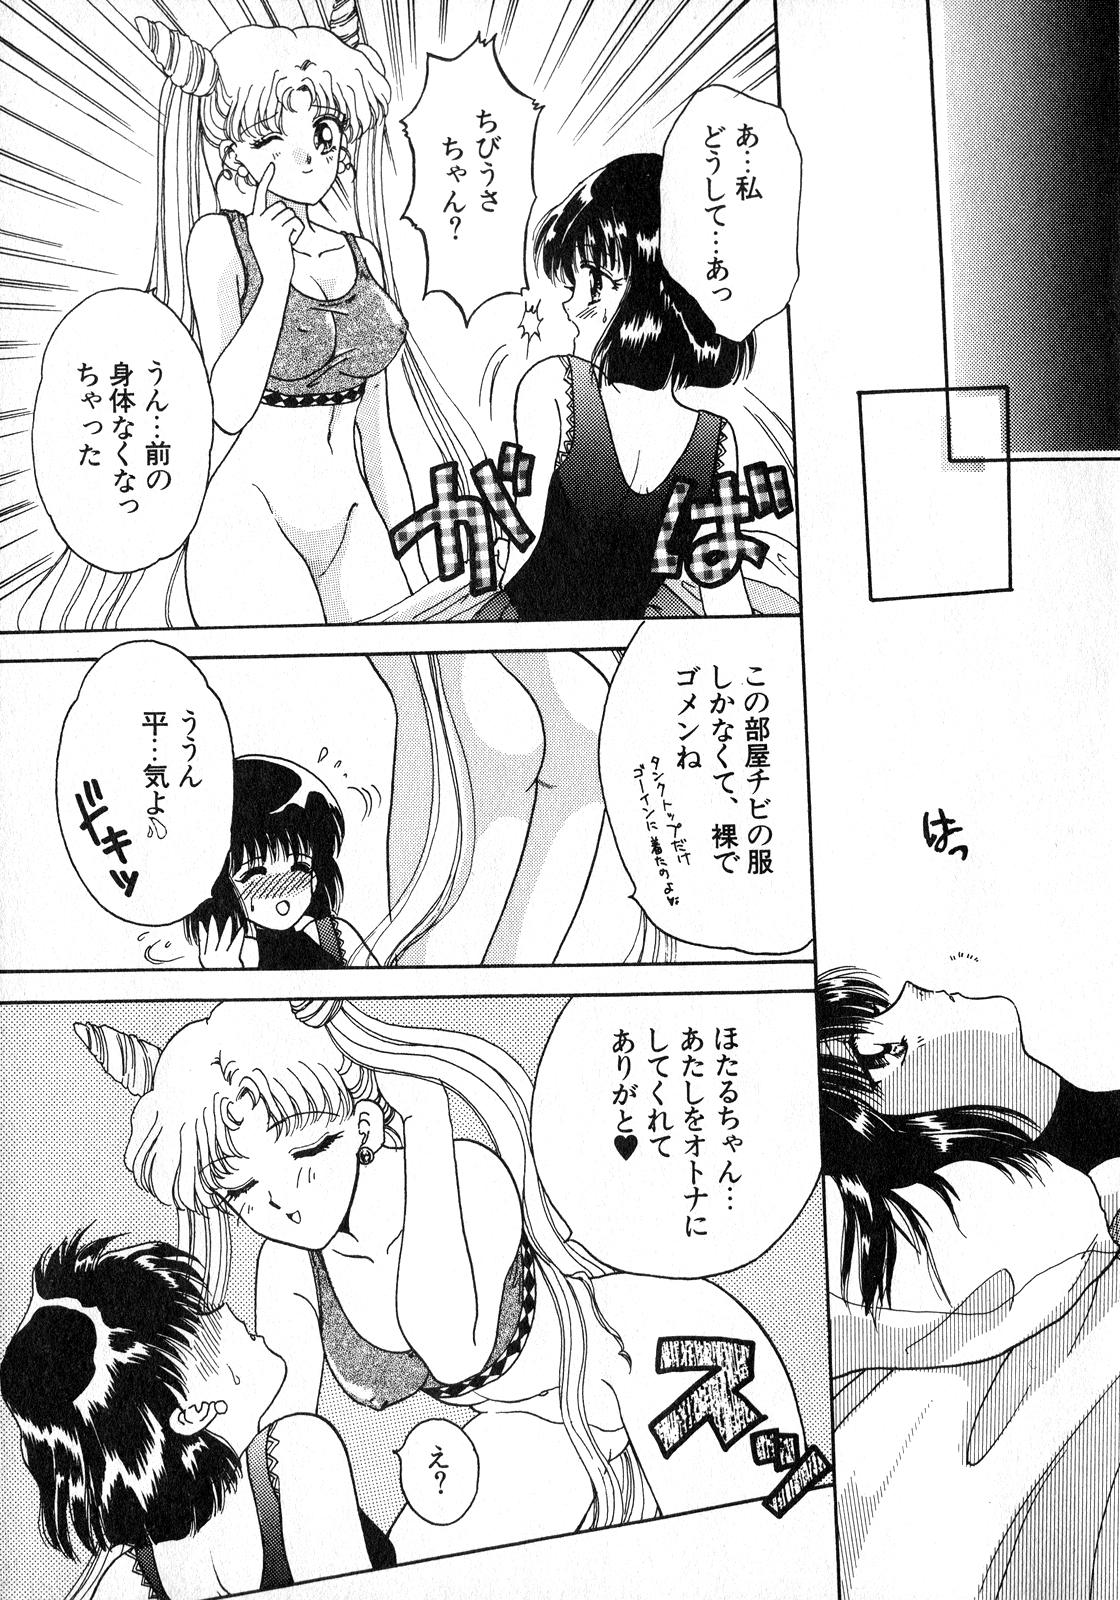 Amateur Blowjob Lunatic Party 8 - Sailor moon Butt Plug - Page 12